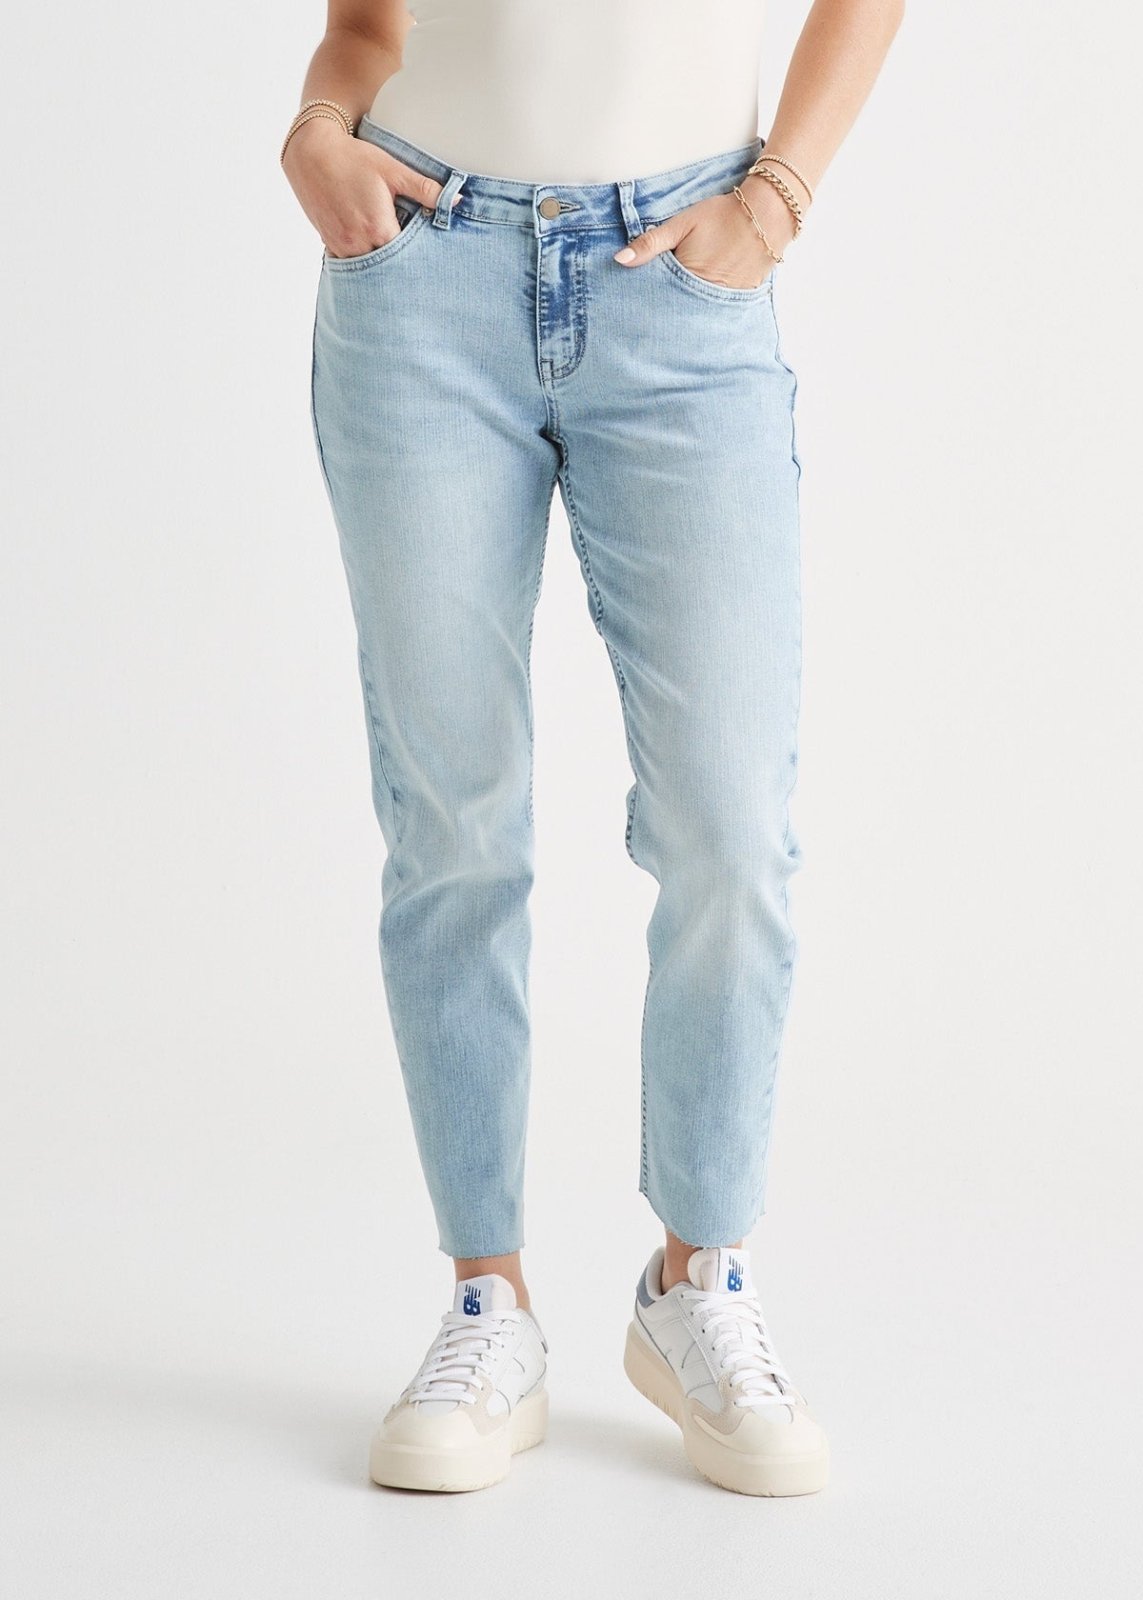 Women's Jeans: Slim, stretch, skinny, mom